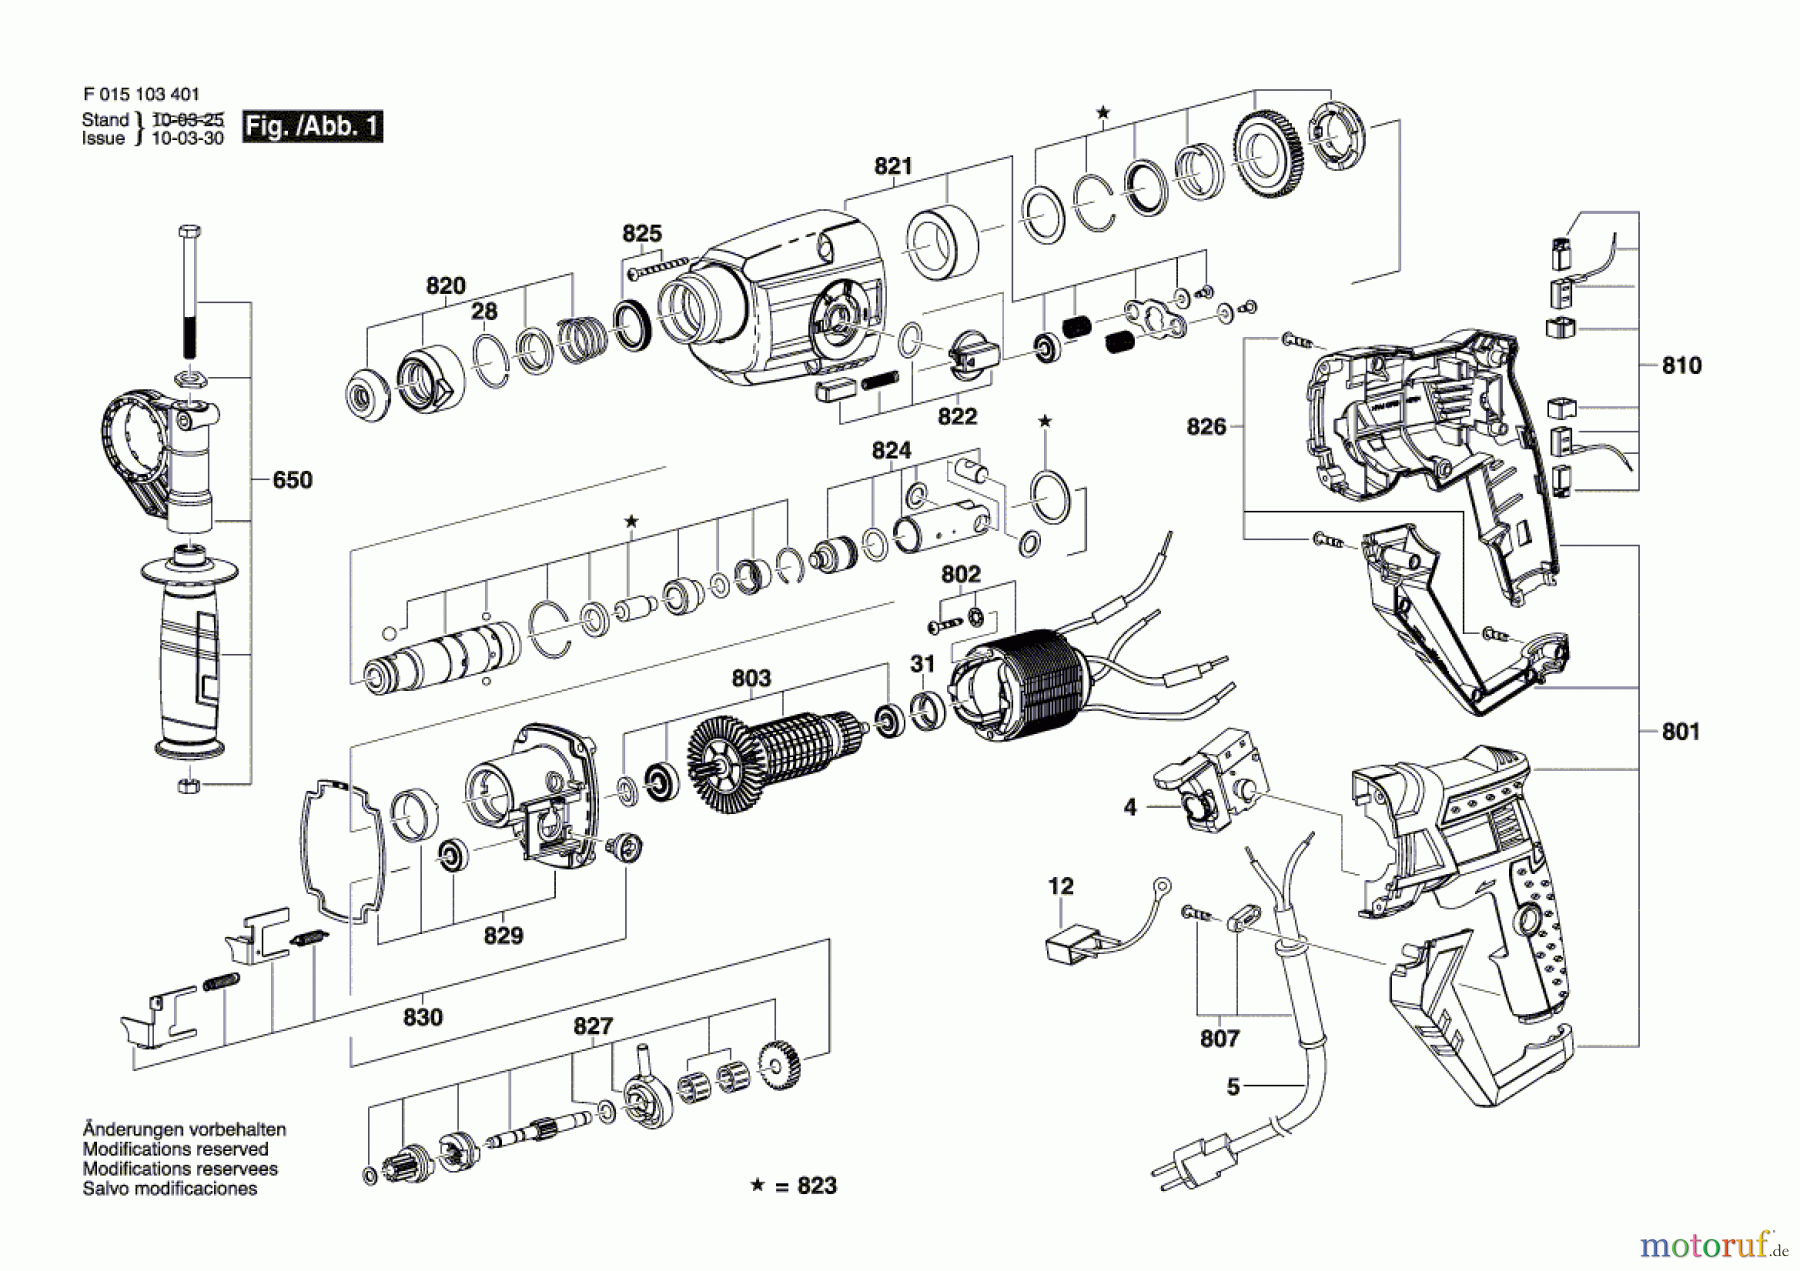  Bosch Werkzeug Bohrhammer 1743 Seite 1